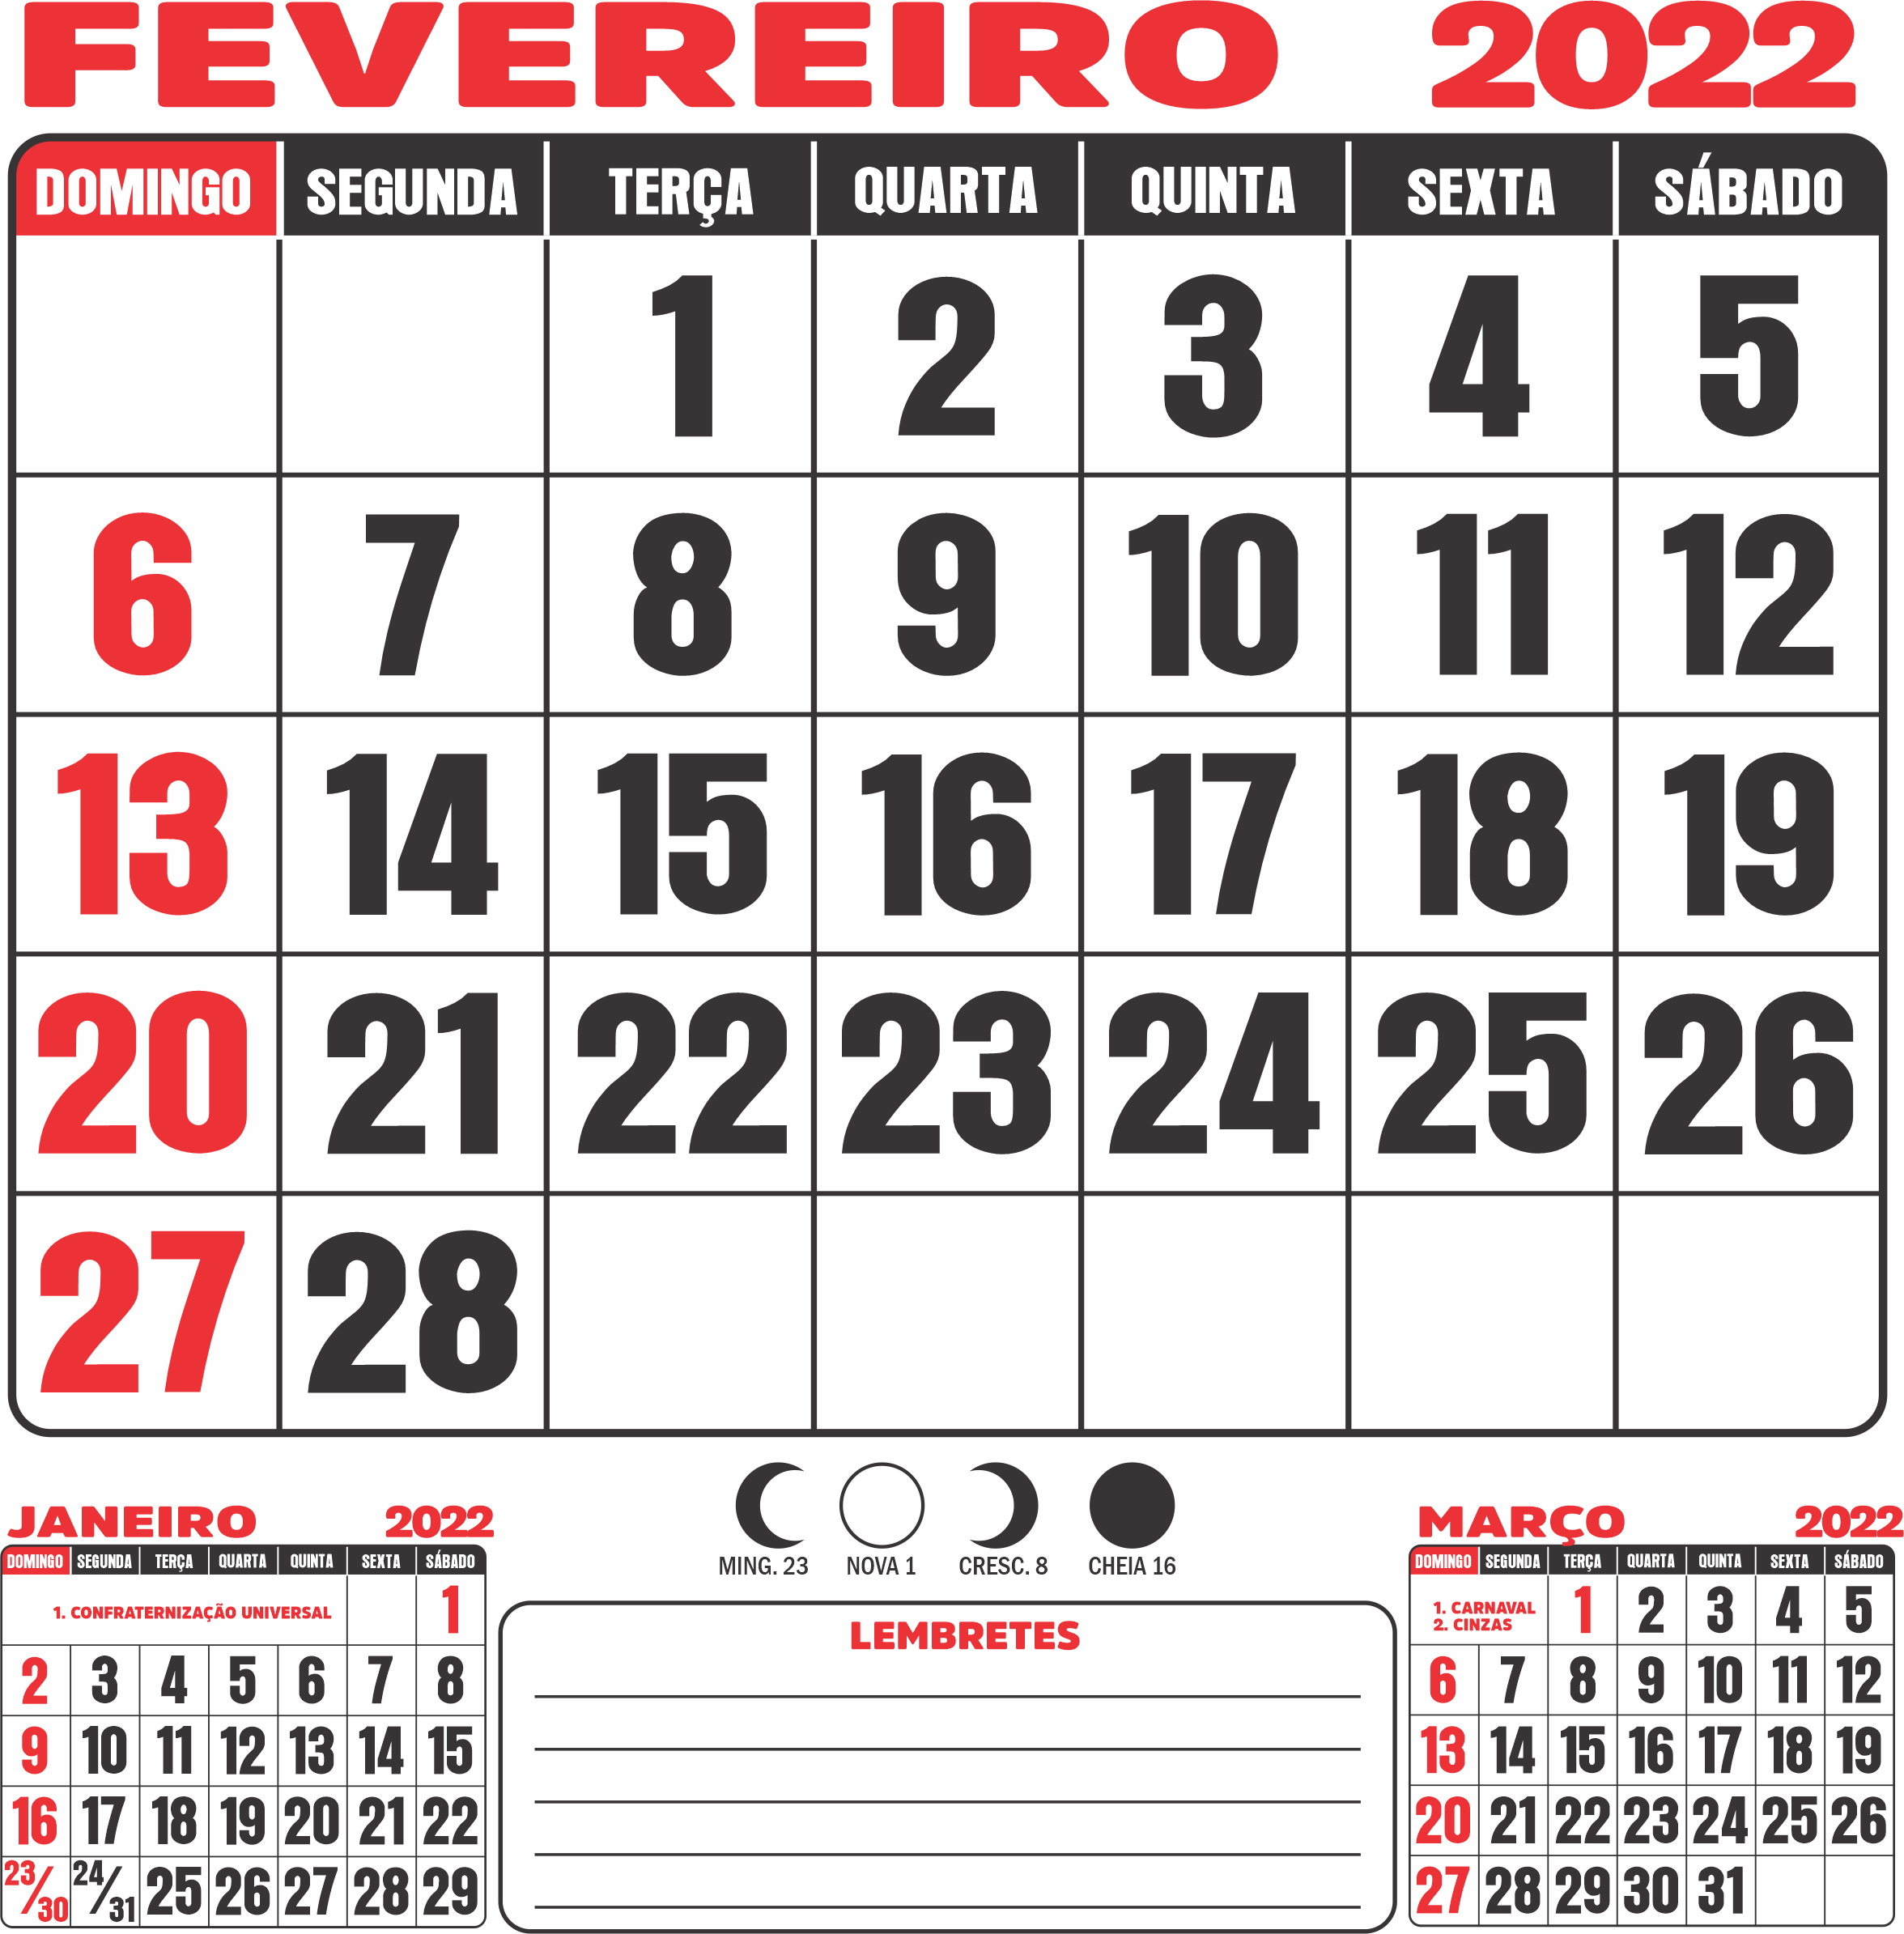 Fevereiro 2022 Calendario Imagem Legal